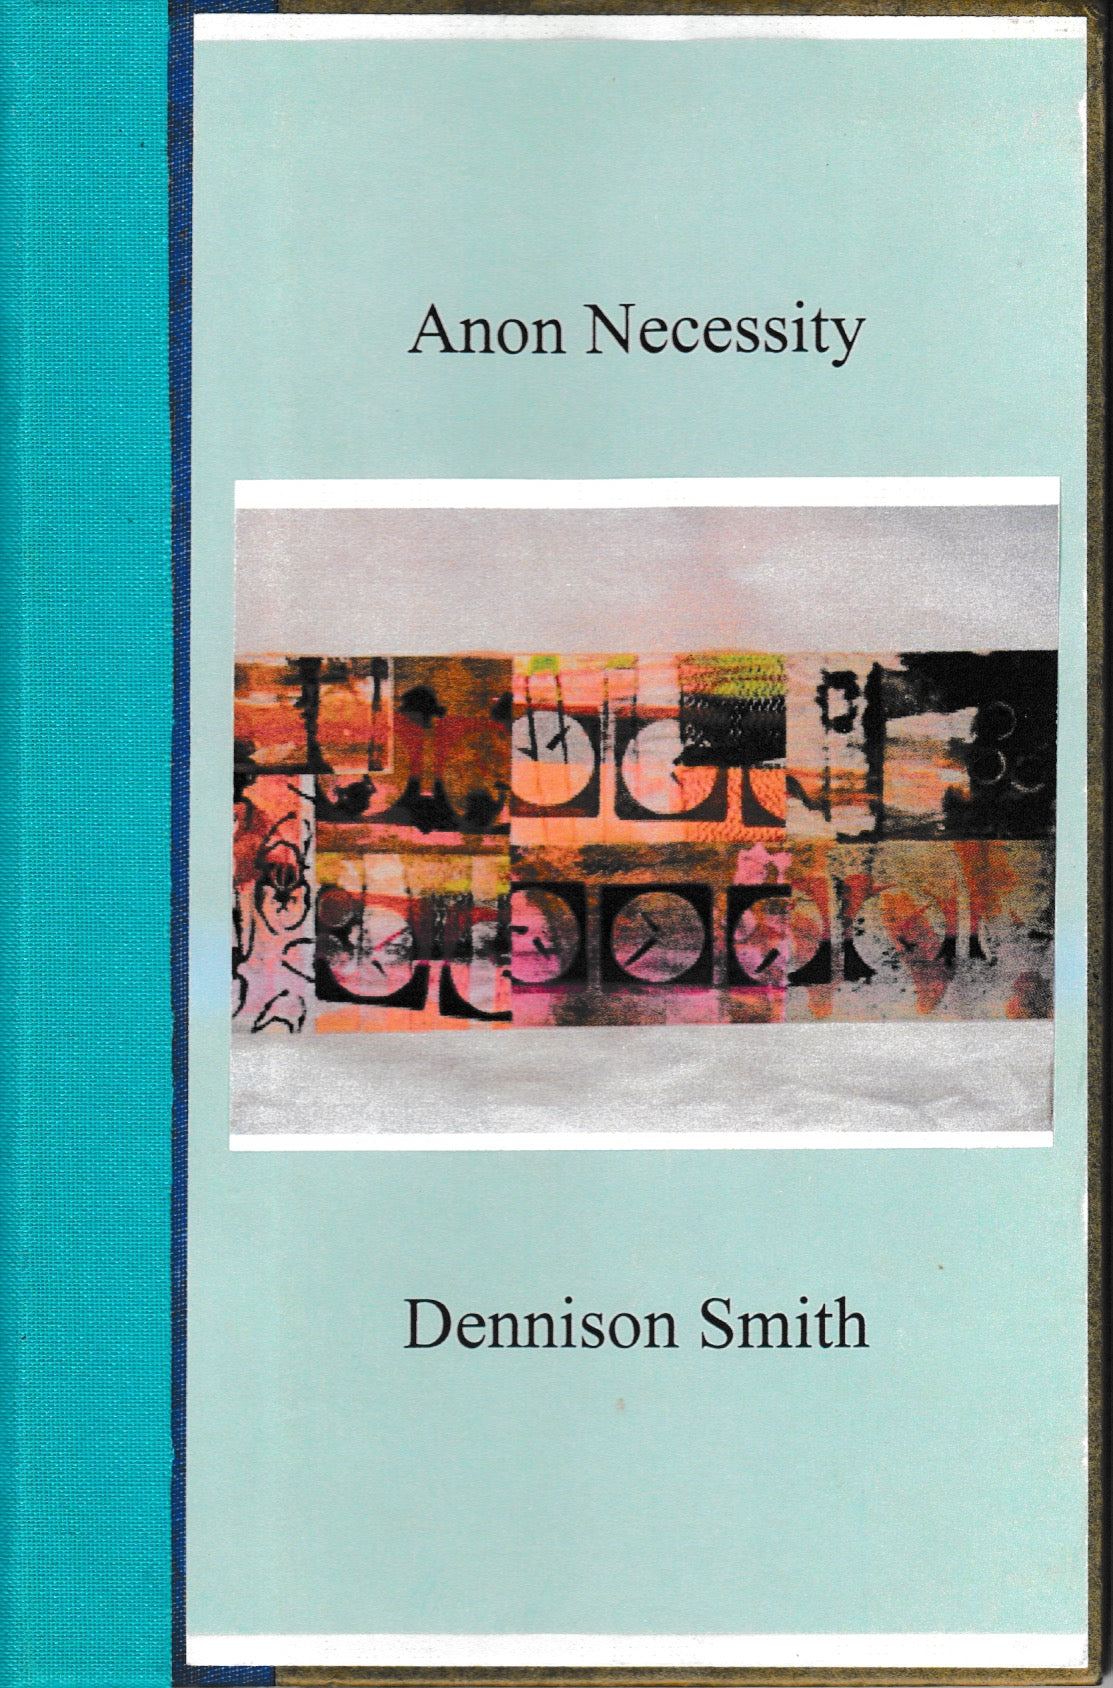 Anon Necessity by Dennison Smith